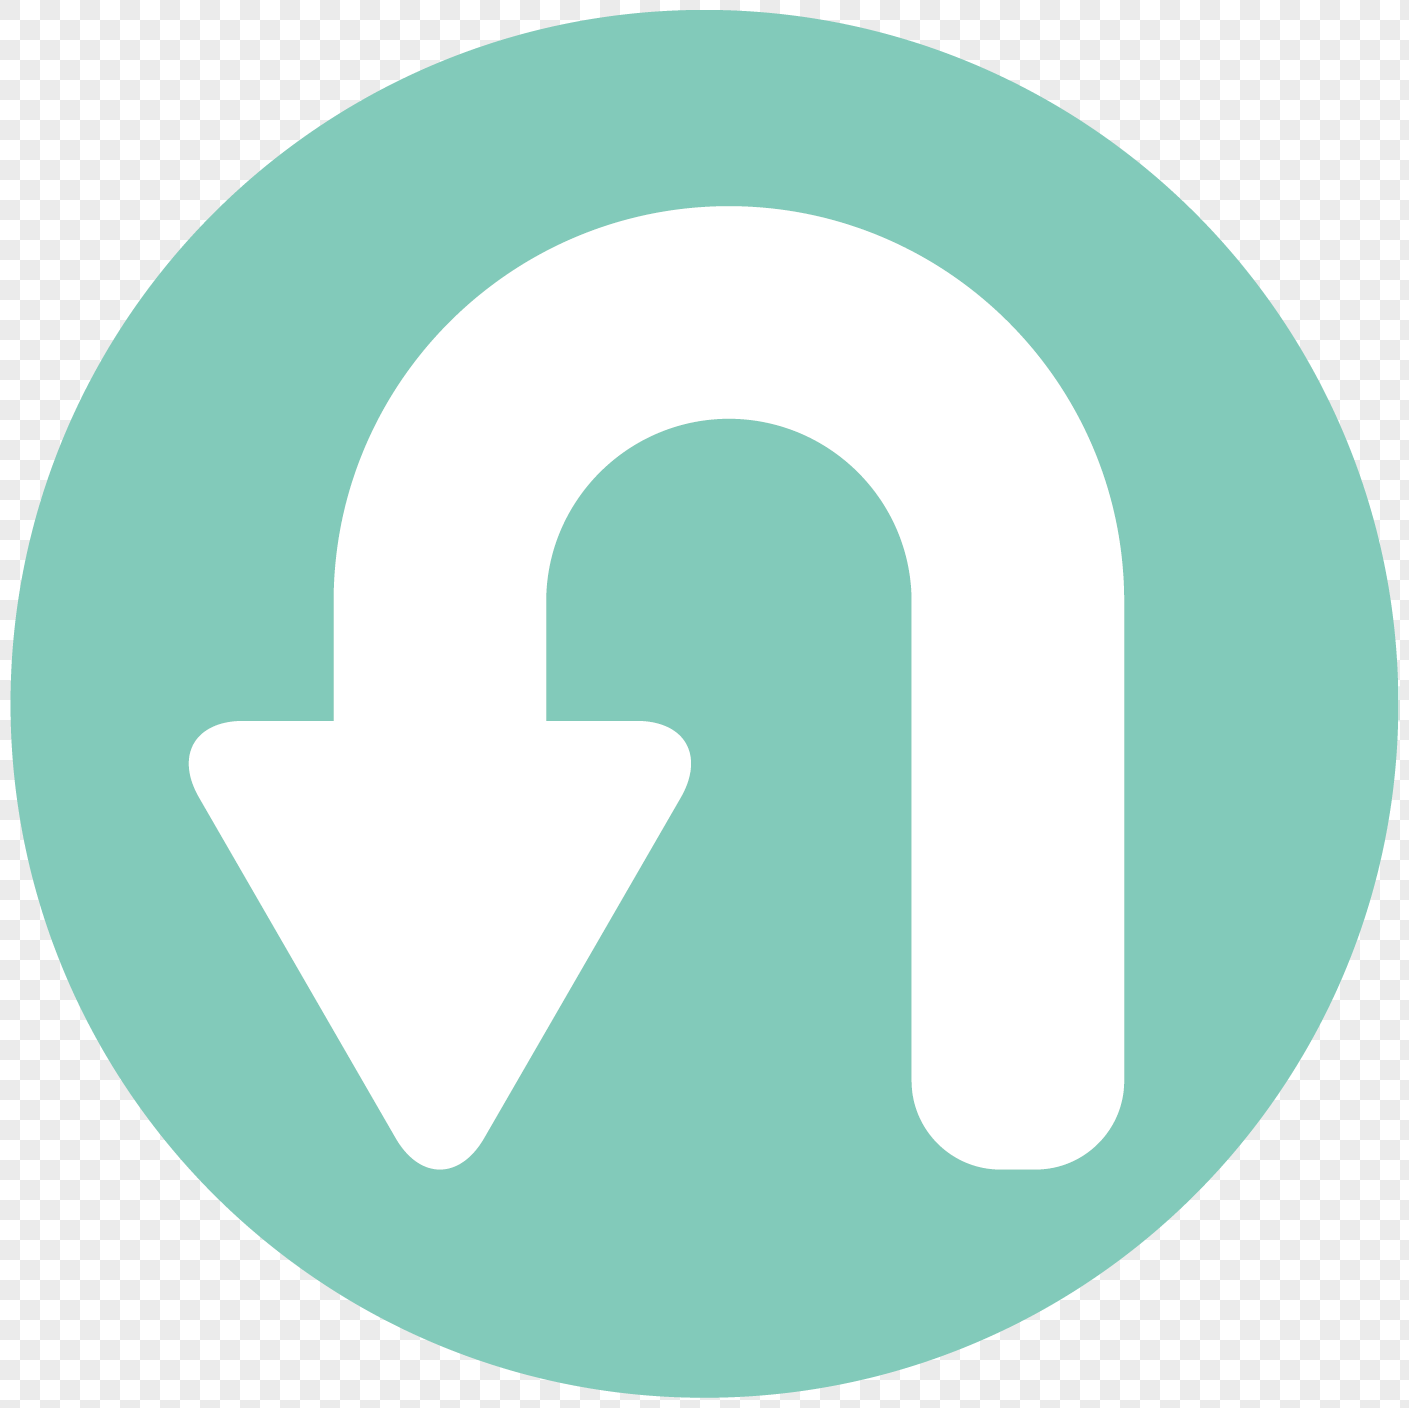 White Curved Arrow Logo - Green circular bottom white curved arrow arrow arrow vector elem png